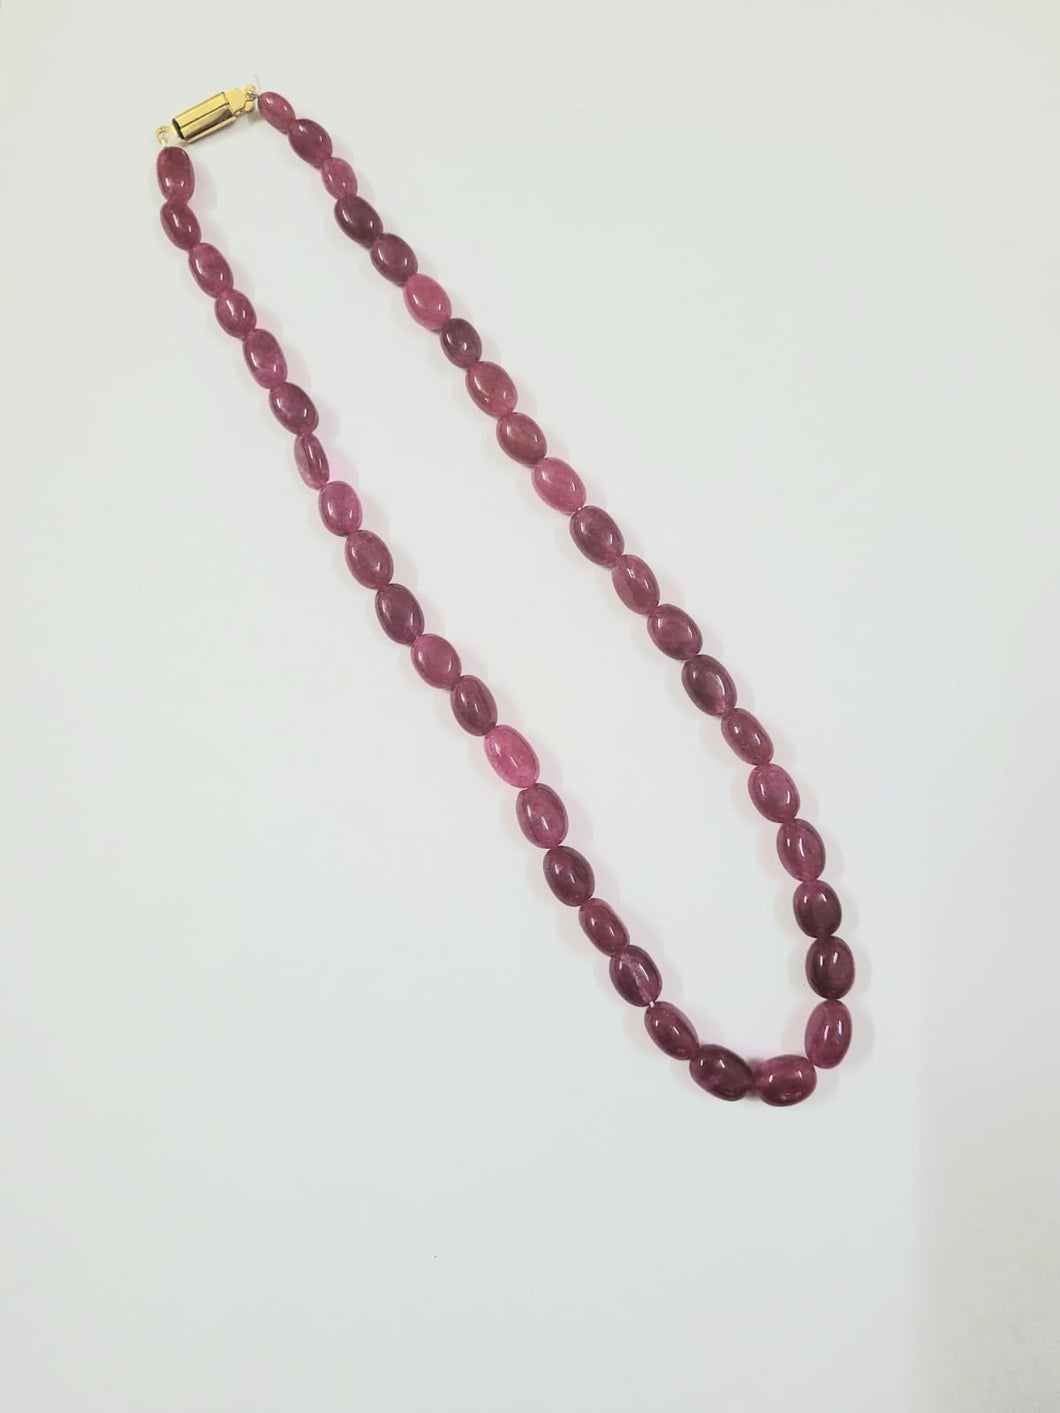 Precious Ruby quartz Ovals single line Necklace